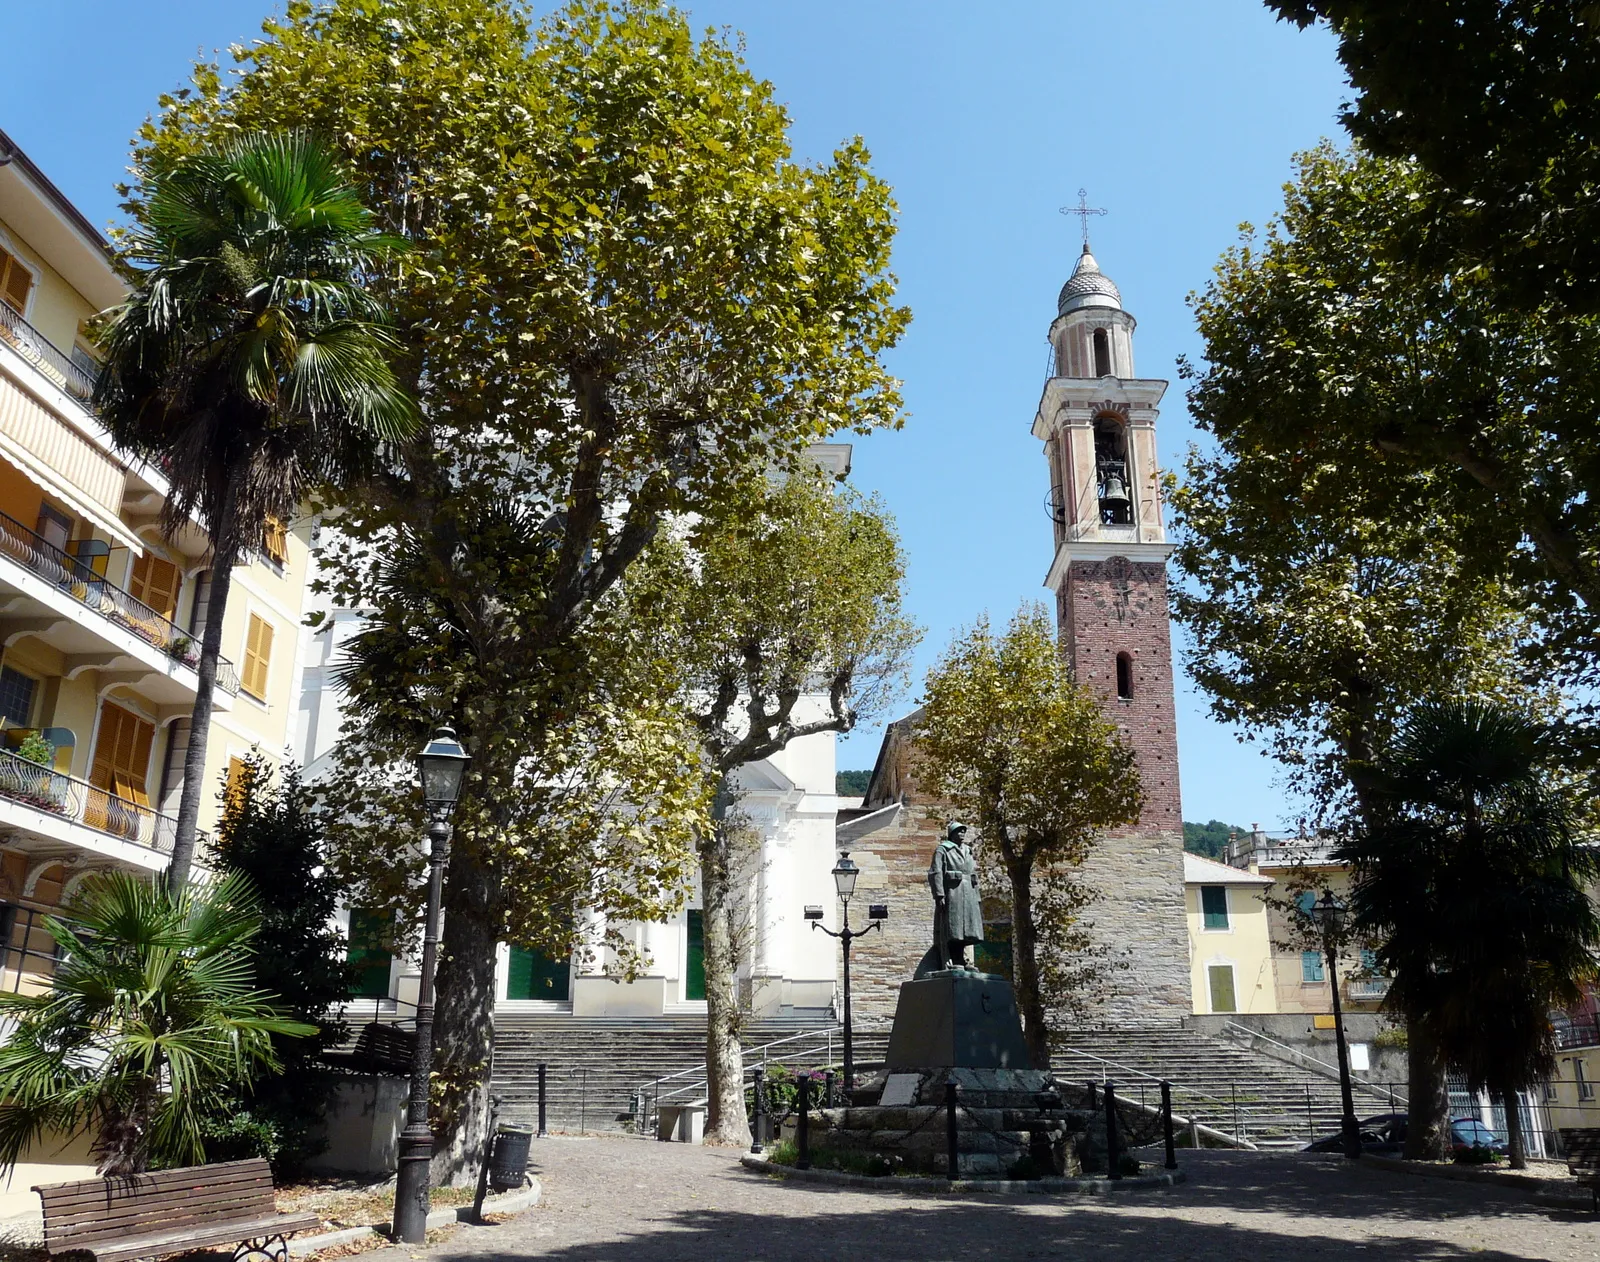 Photo showing: Scorcio del piazzale antistante le due chiese di Sant'Ambrogio e il monumento ai caduti, Uscio, Liguria, Italia